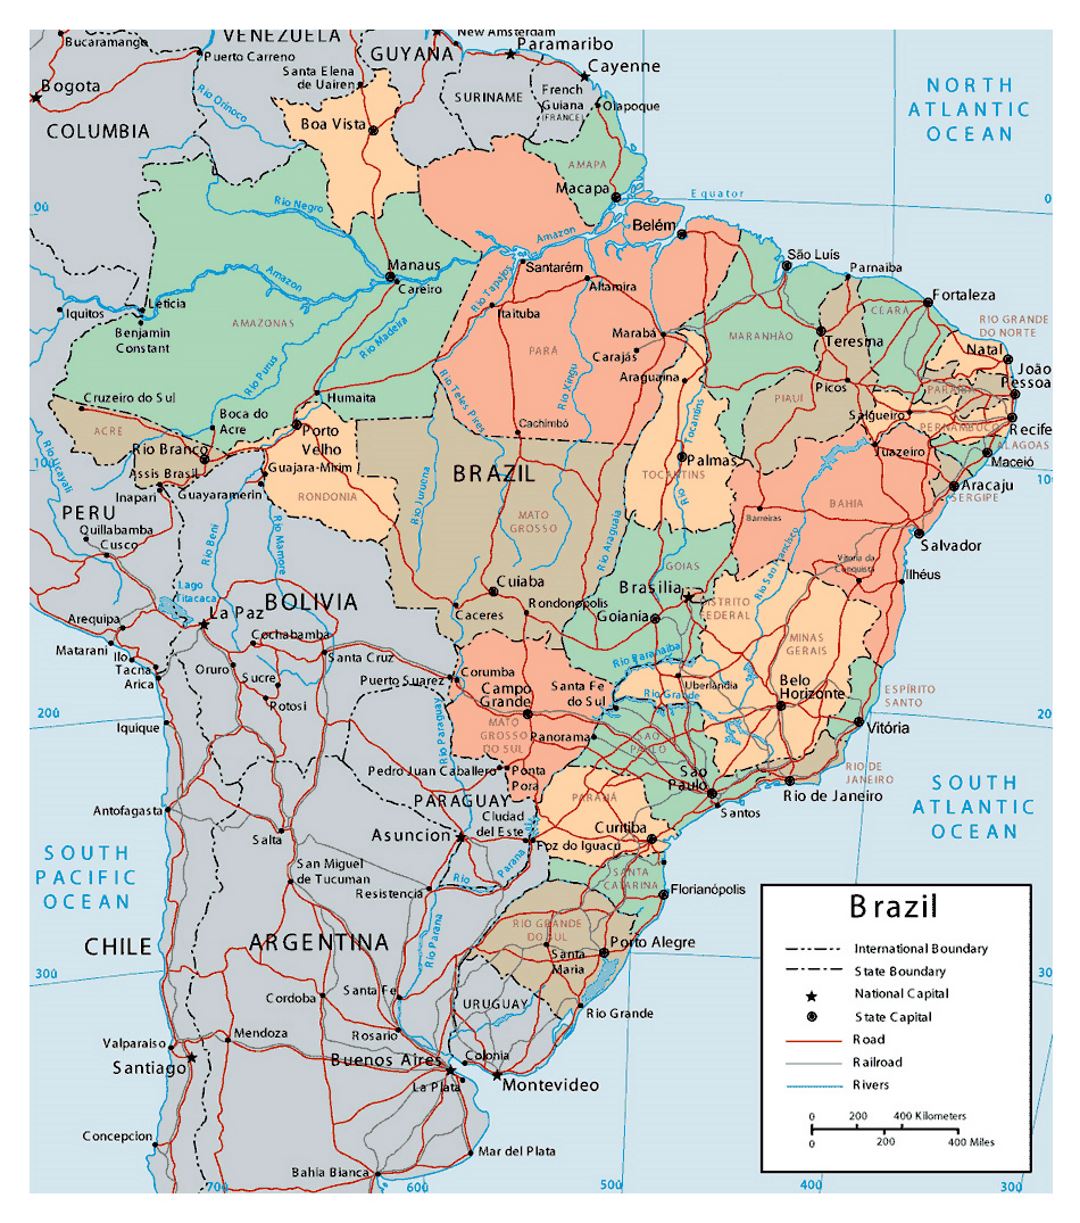 Grande detallado mapa político y administrativo de Brasil